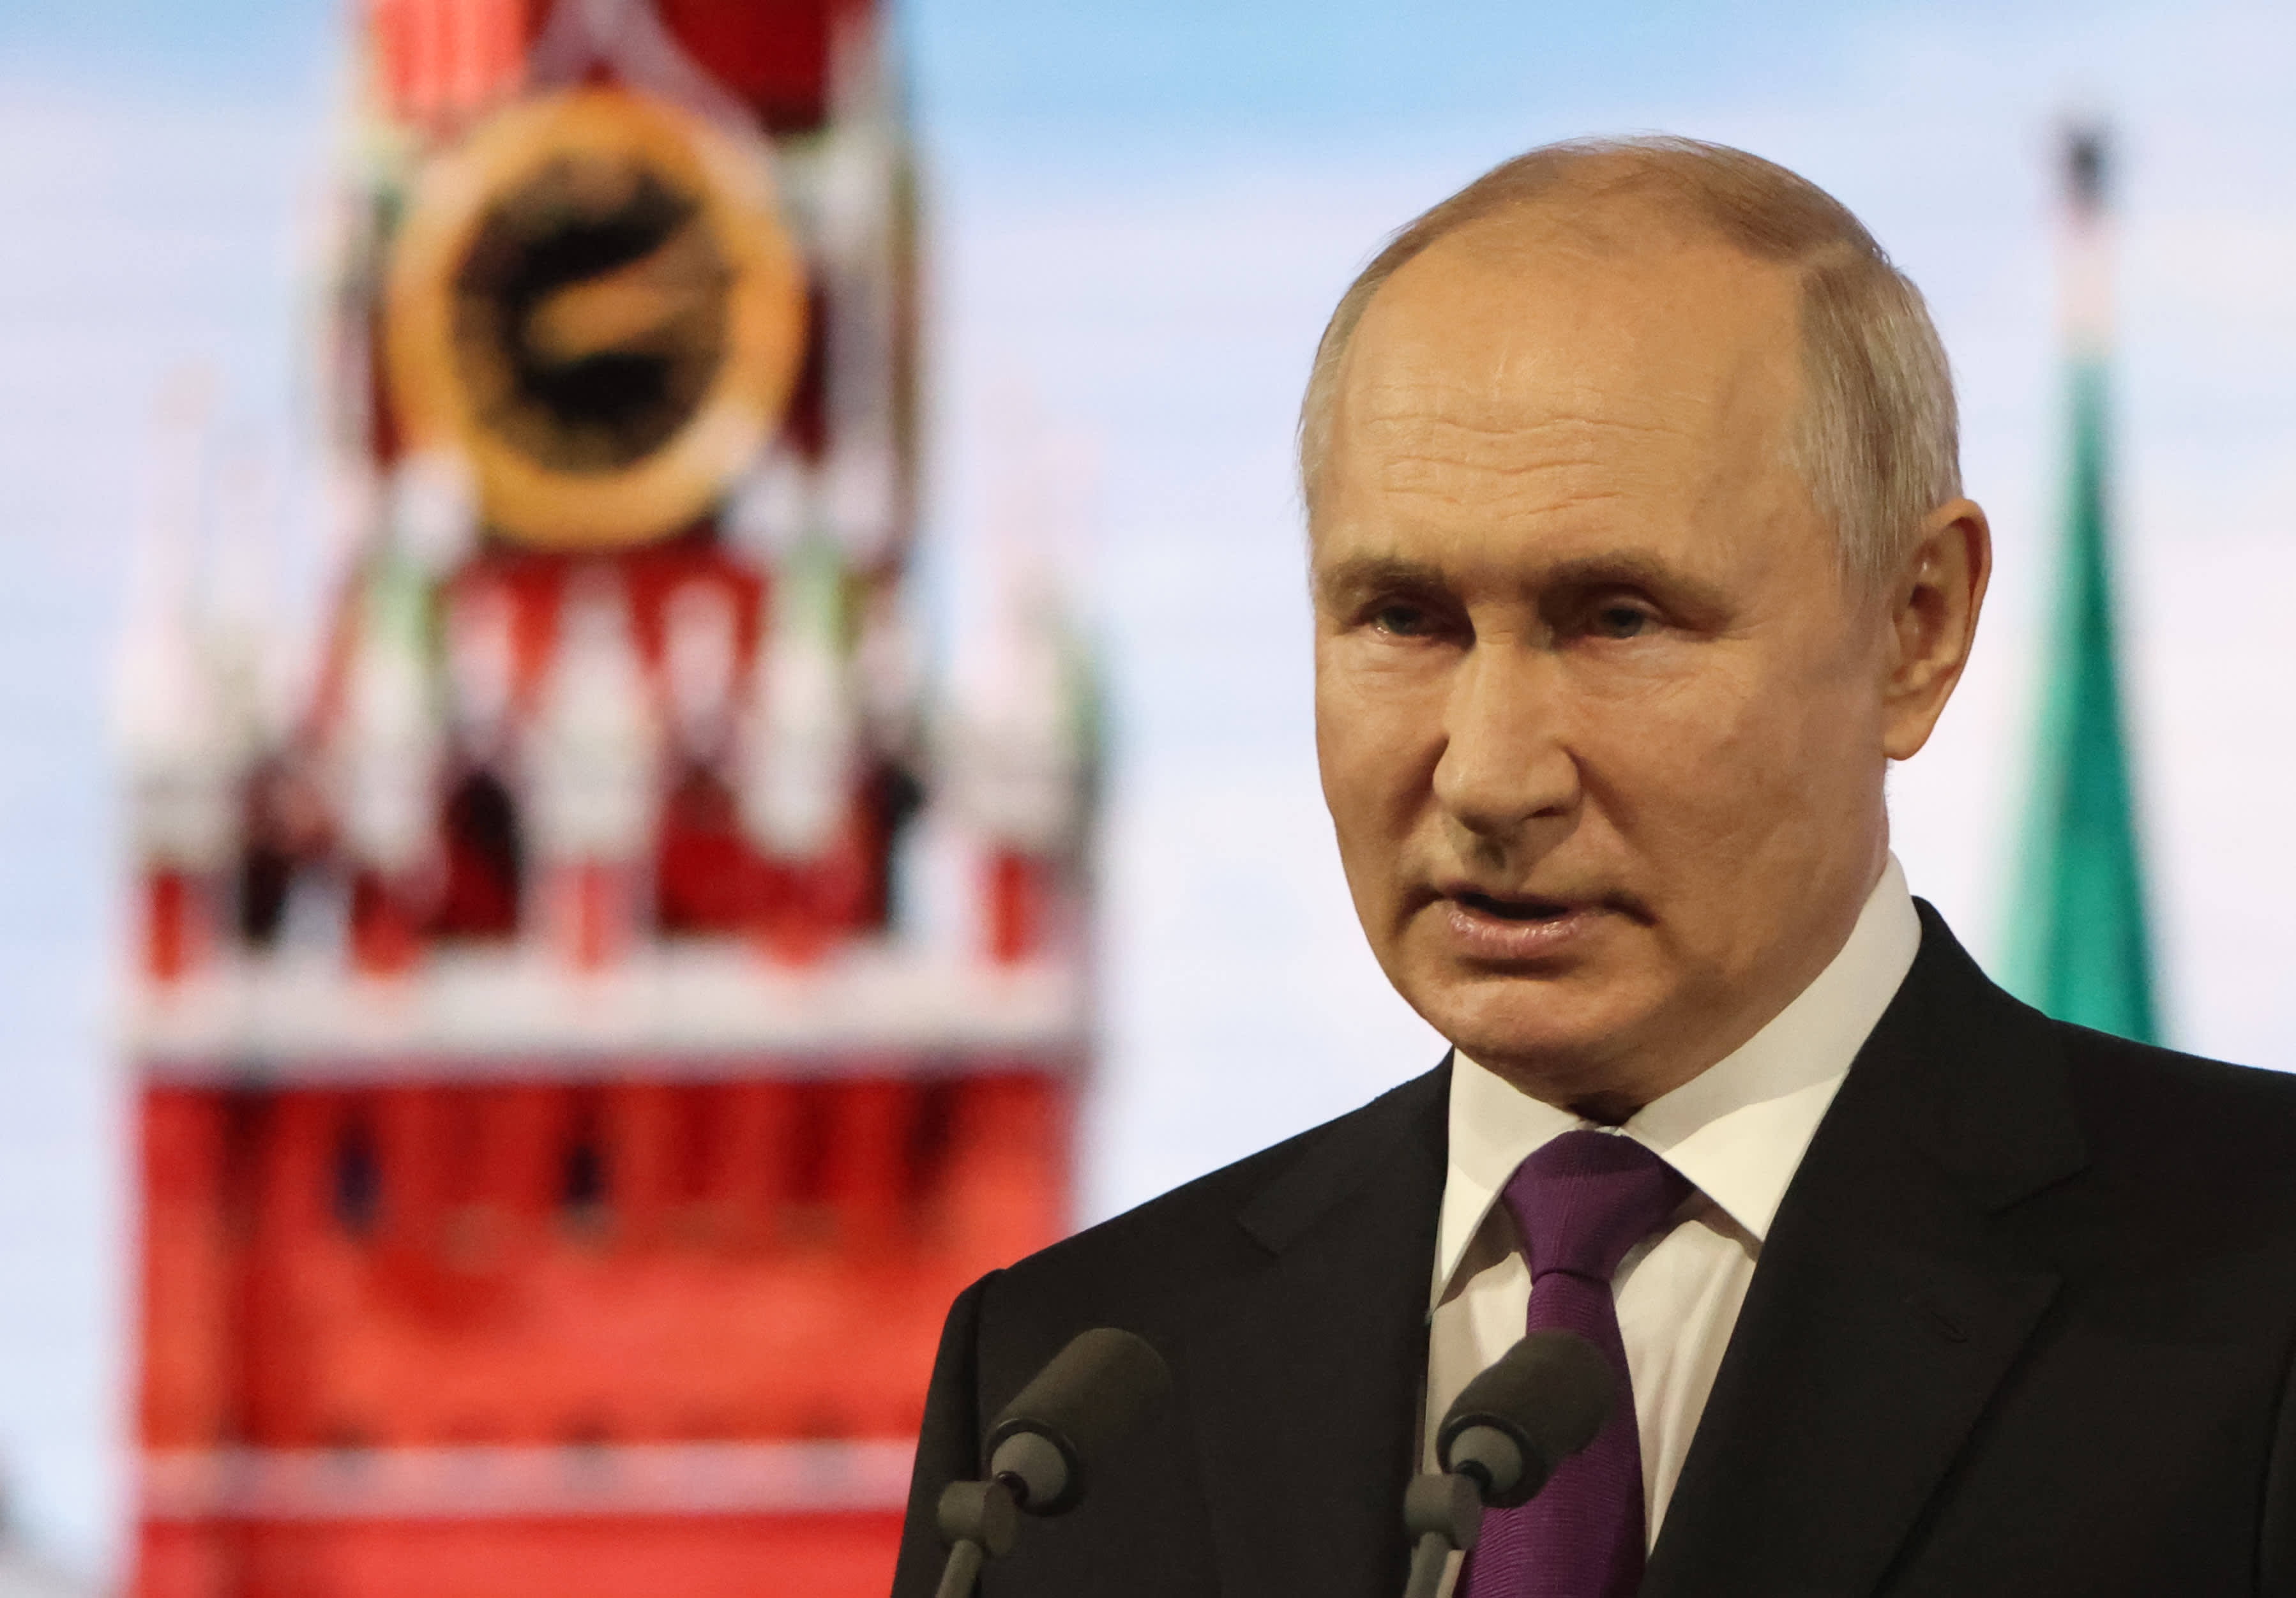 Putin fa una rara visita negli Emirati Arabi Uniti e in Arabia Saudita per discutere delle relazioni